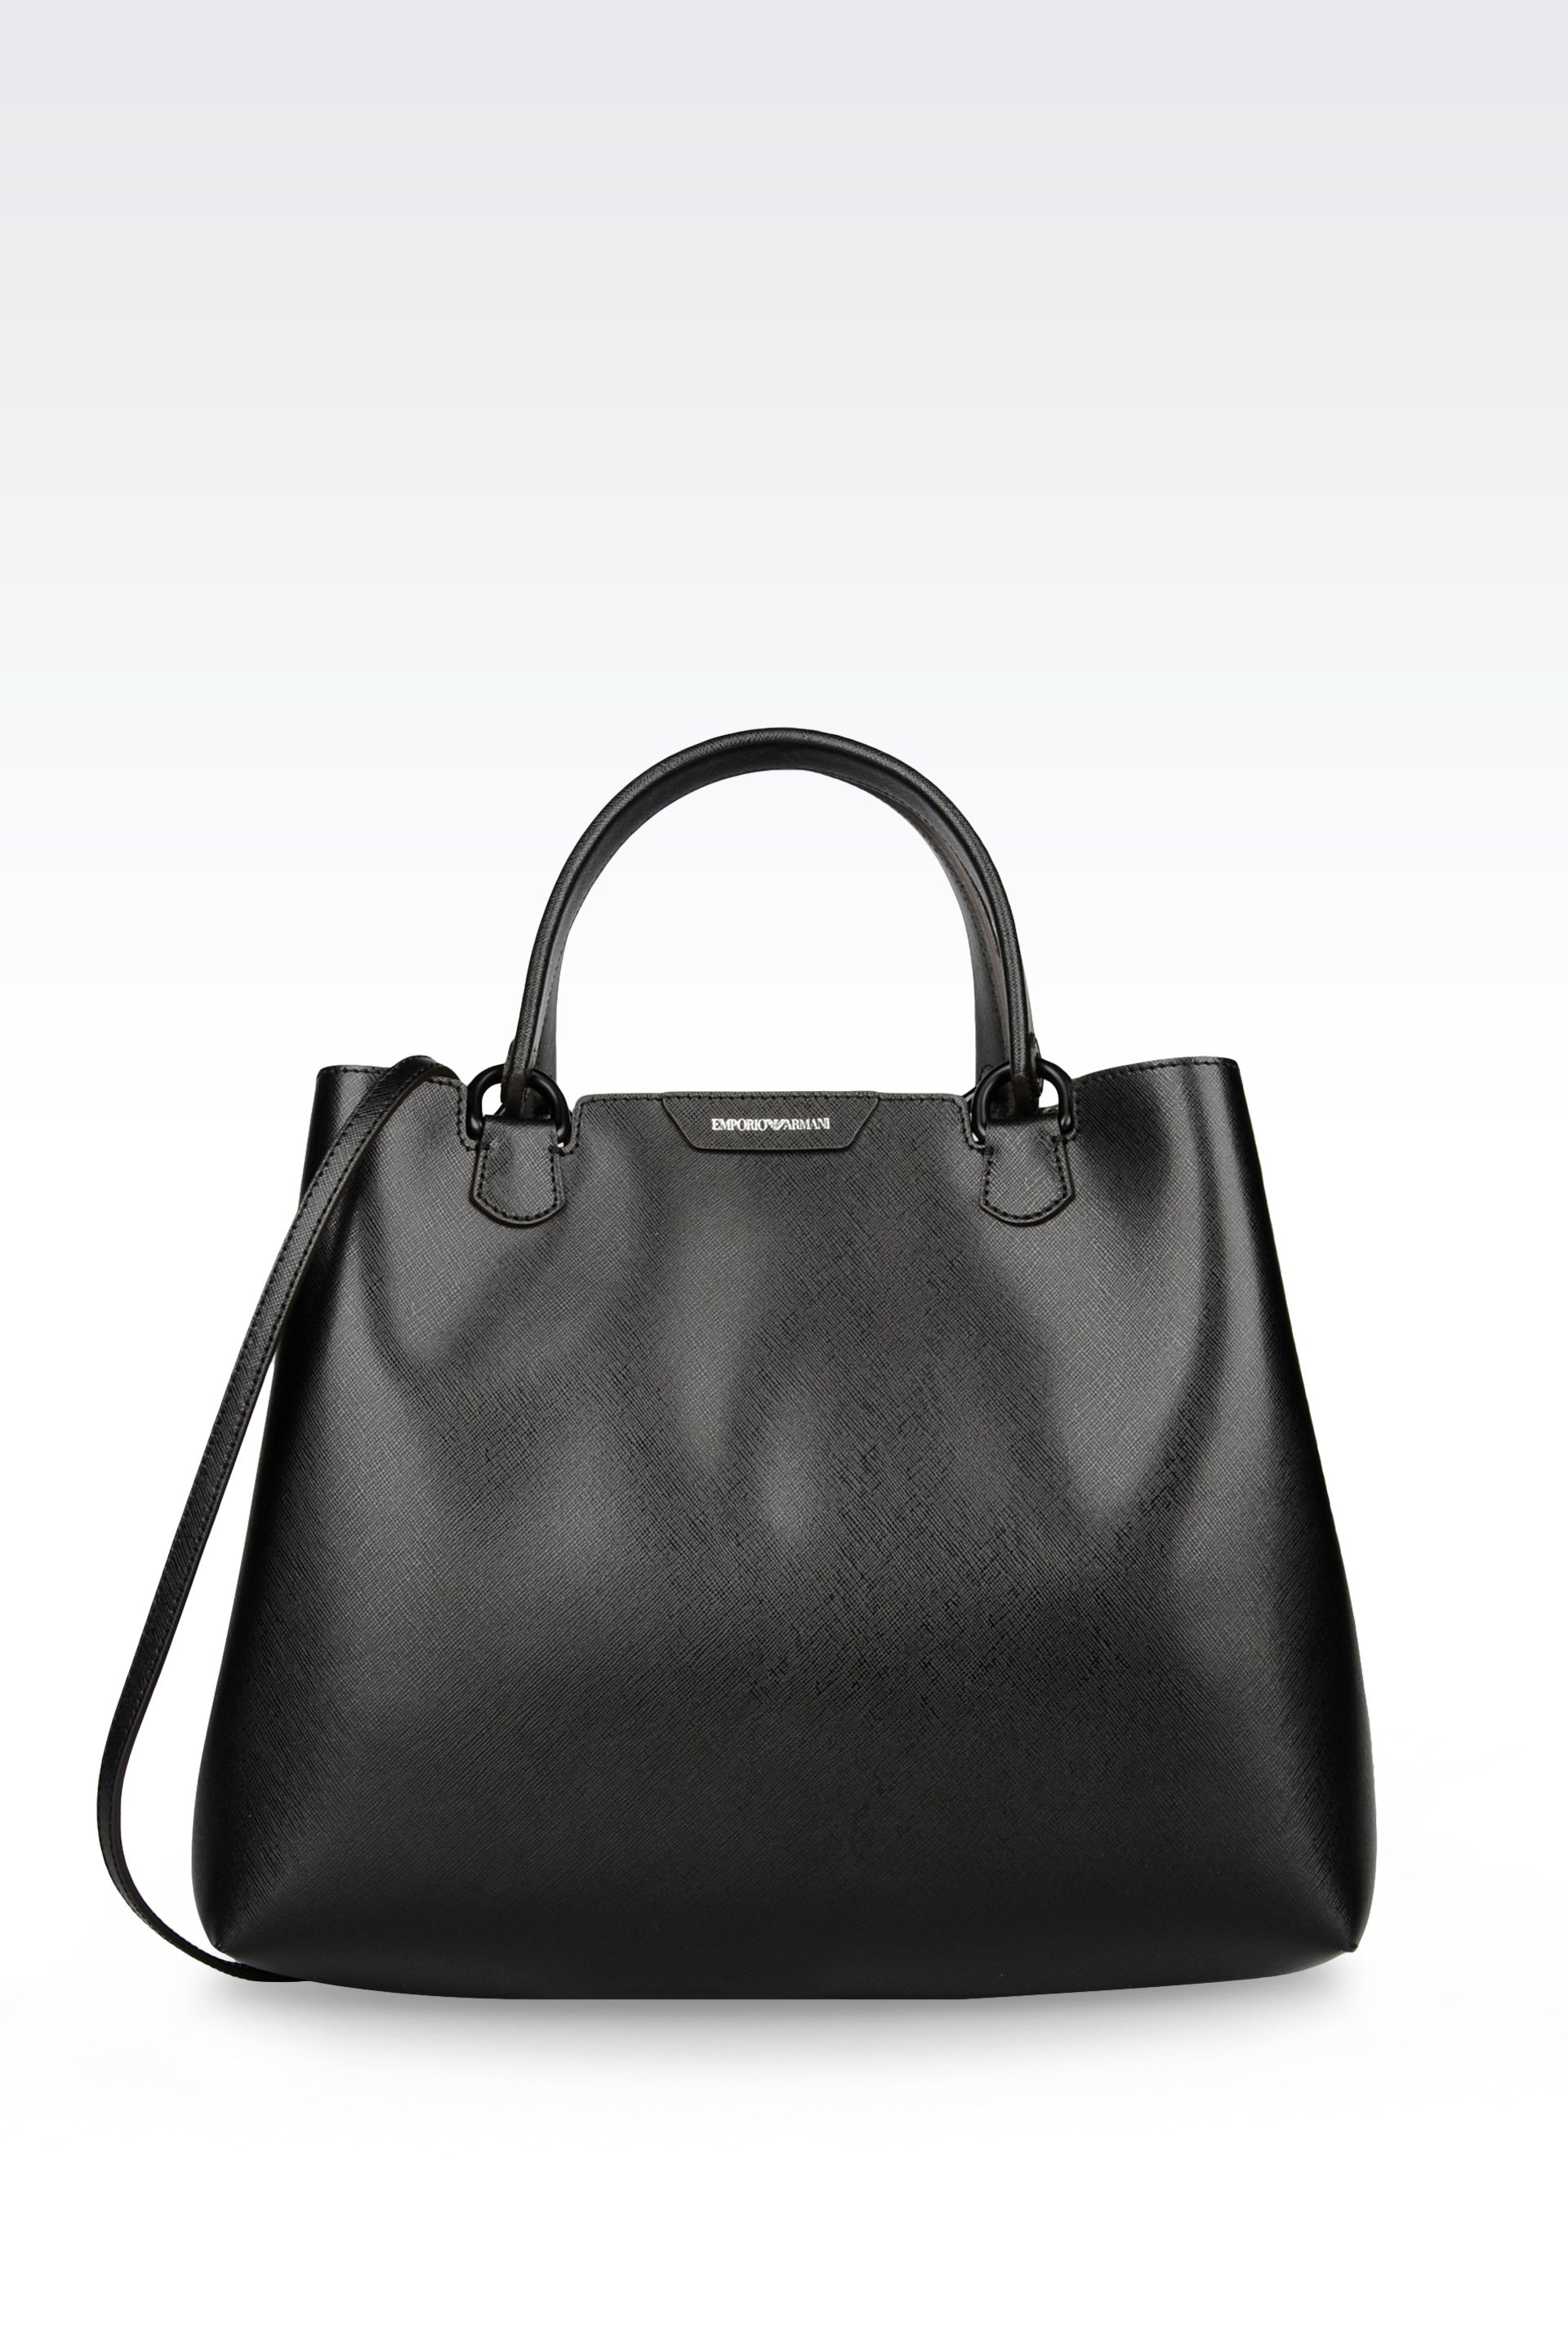 Emporio armani Shopping Bag In Saffiano Calfskin in Black | Lyst